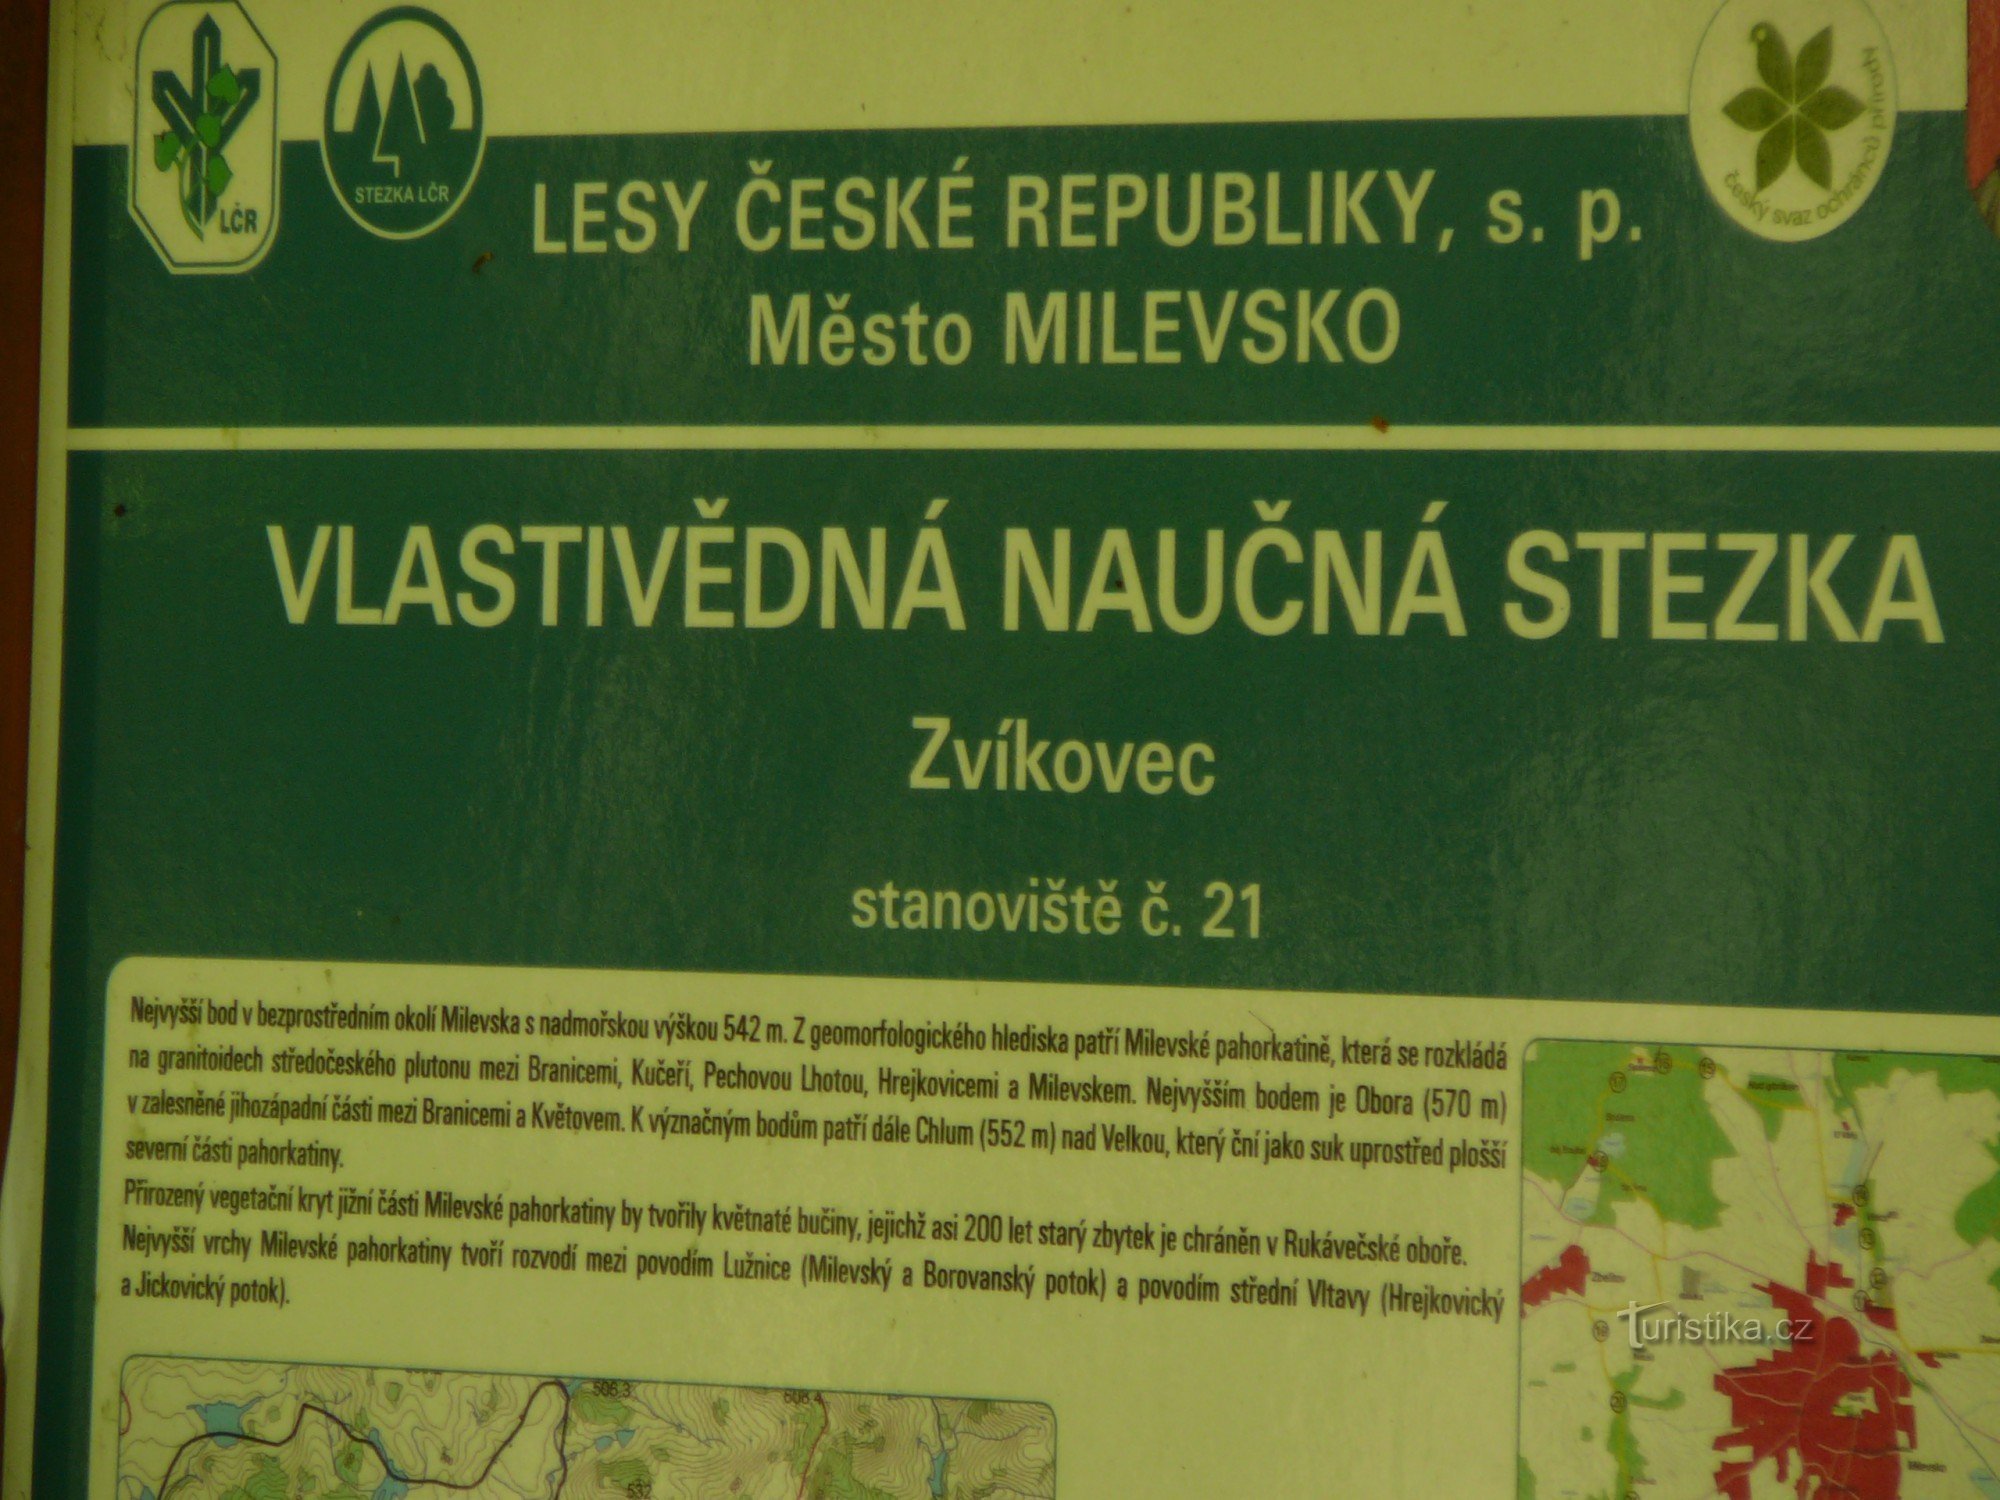 Uma trilha educacional leva por Zvíkovec